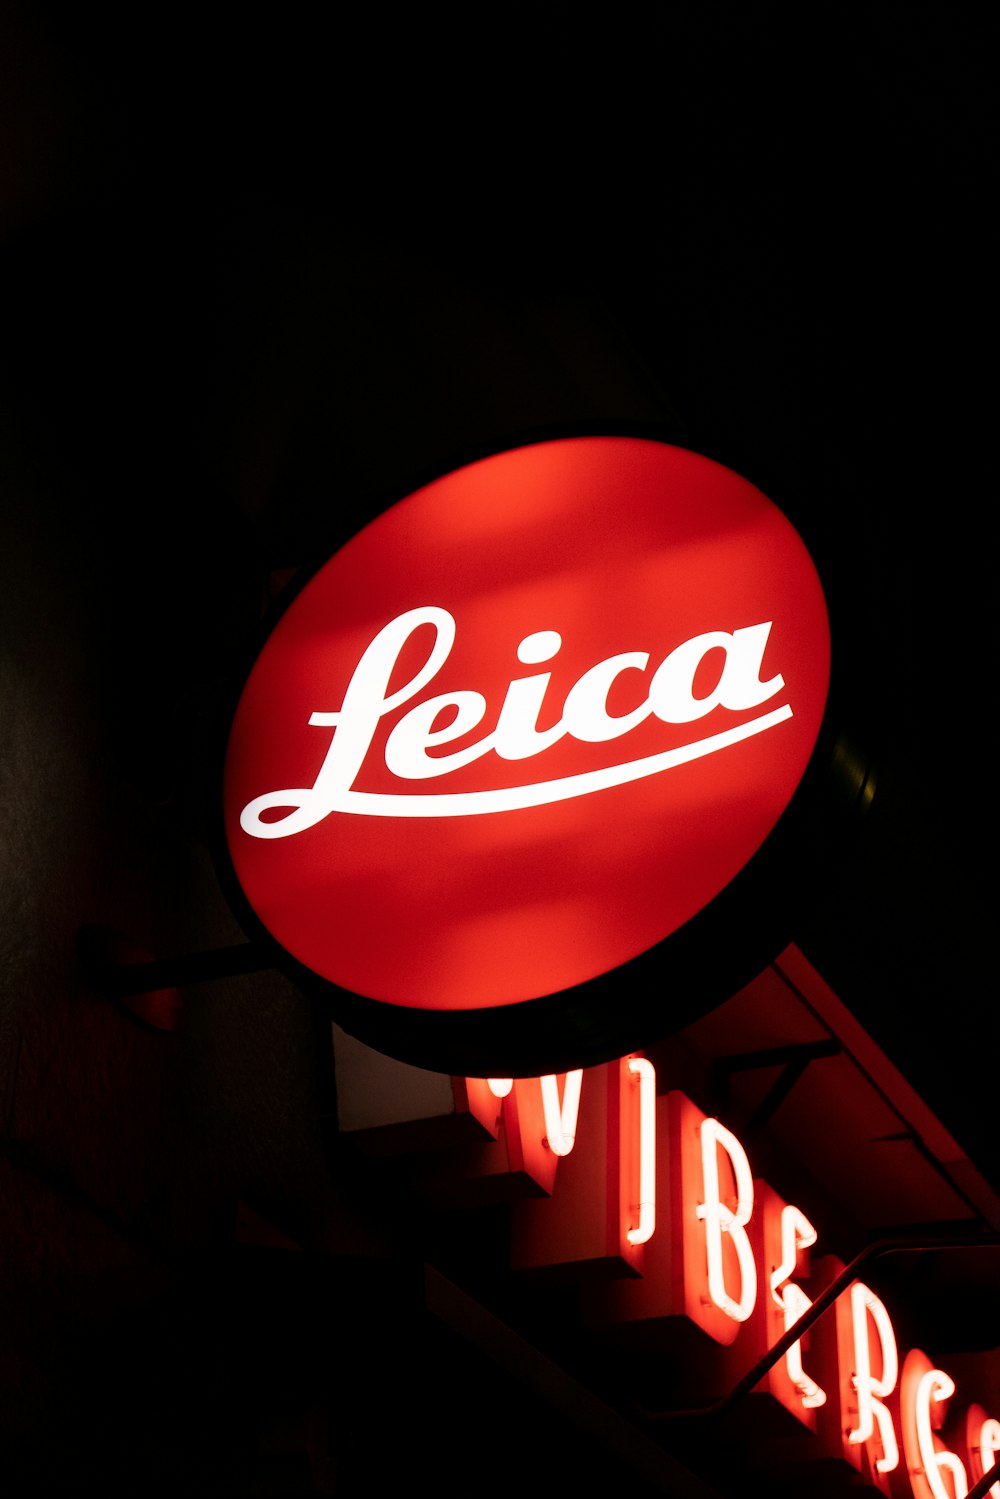 turned-on Leica signage